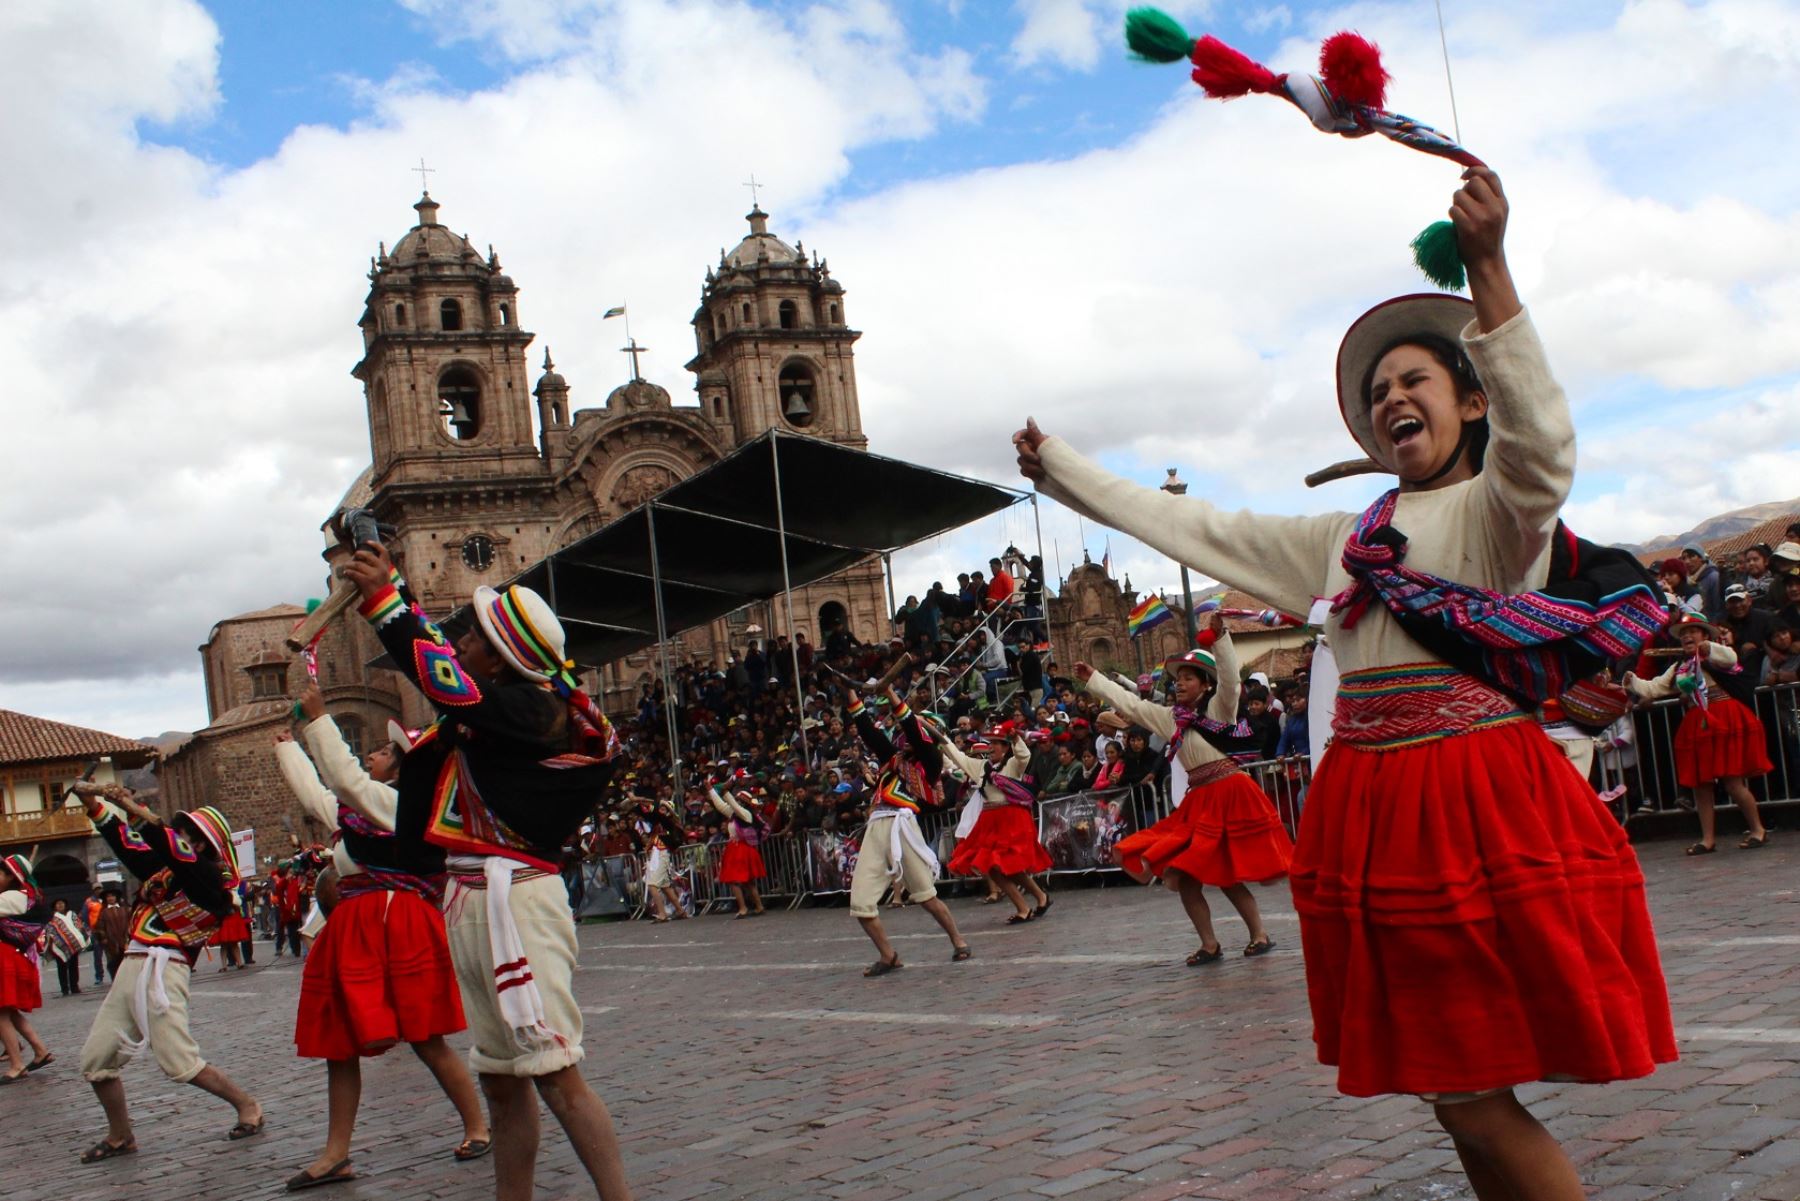 Escolares ofrecen un colorido homenaje a la ciudad de Cusco por su mes jubilar. ANDINA/Percy Hurtado